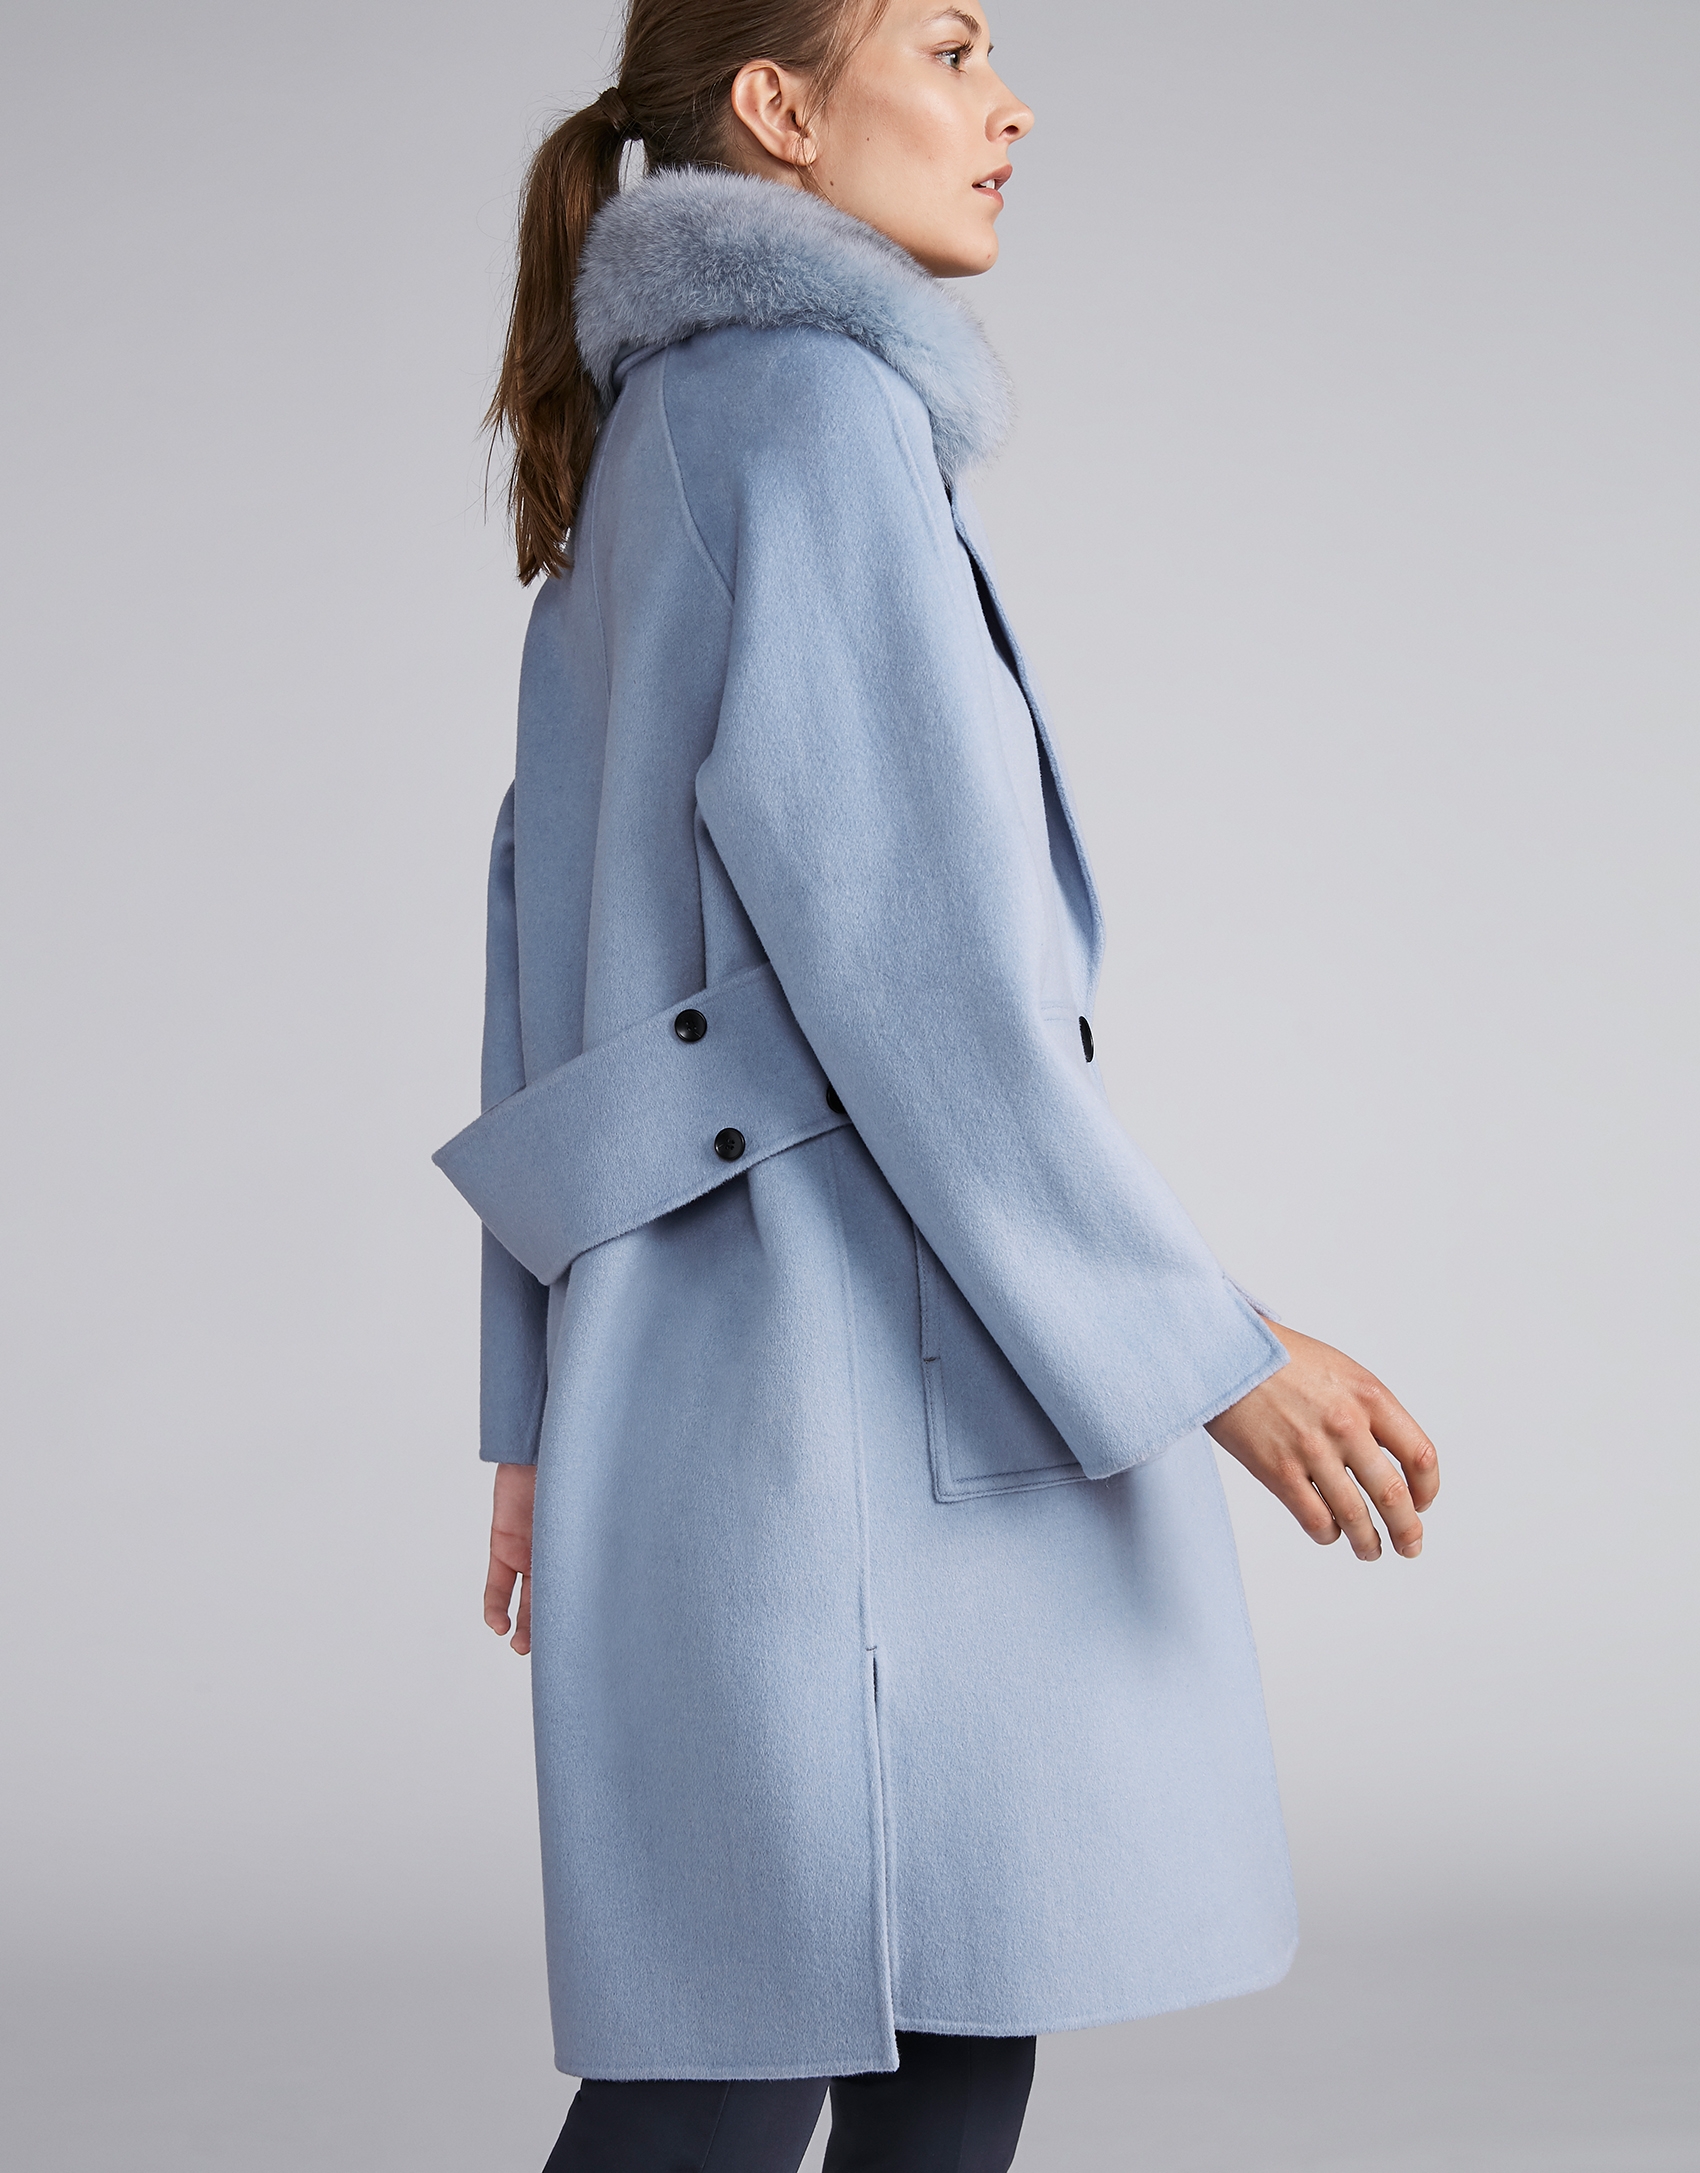 Manteau feutré bleu ciel avec col fourrure | Roberto Verino